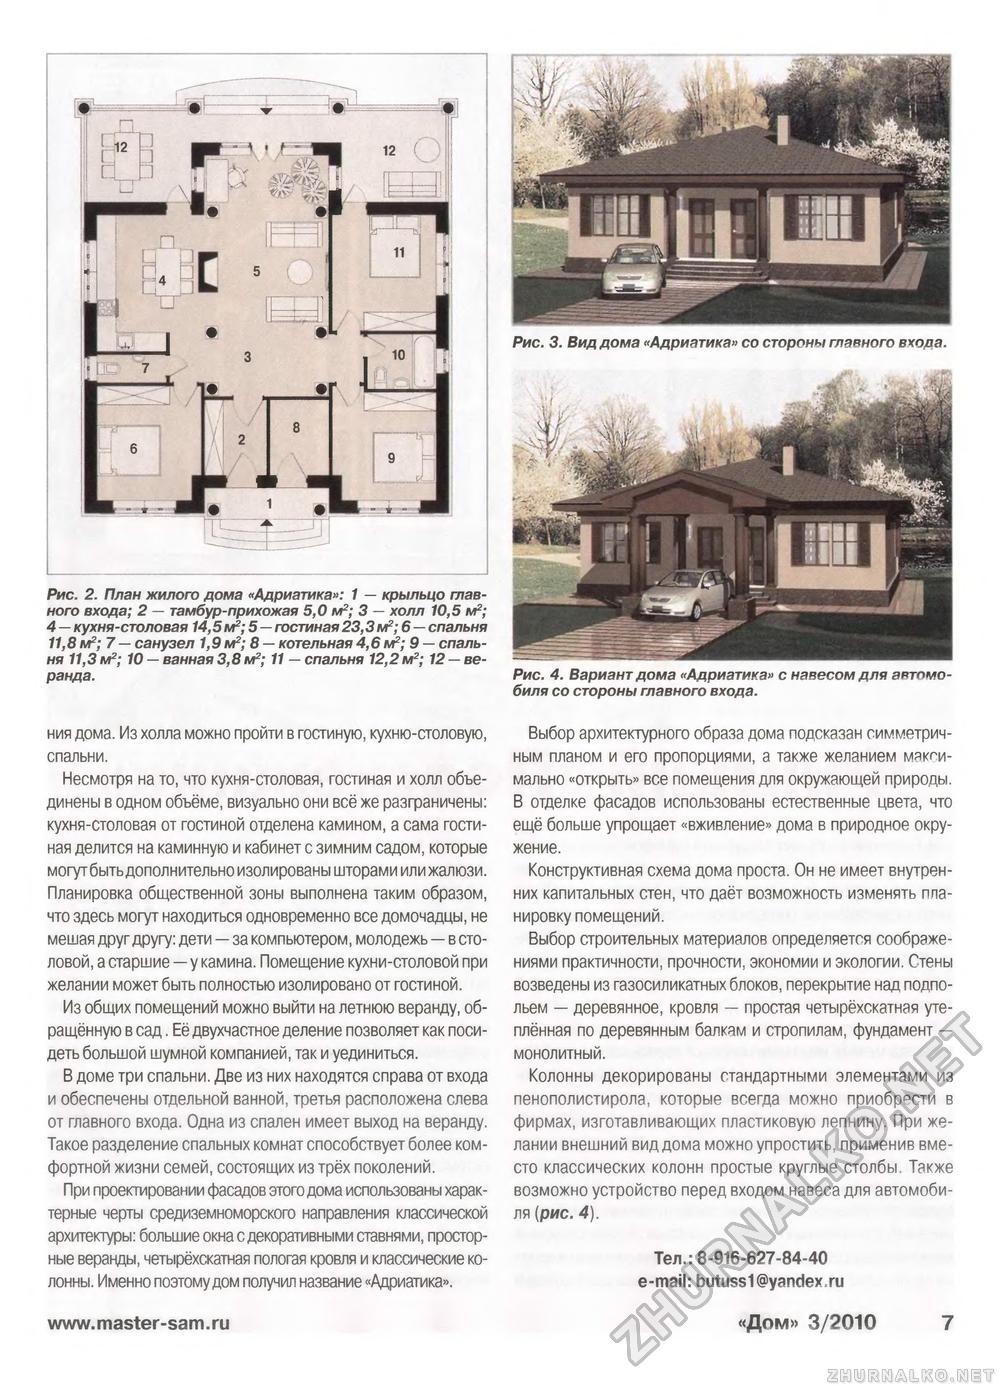 Дом 2010-03, страница 7